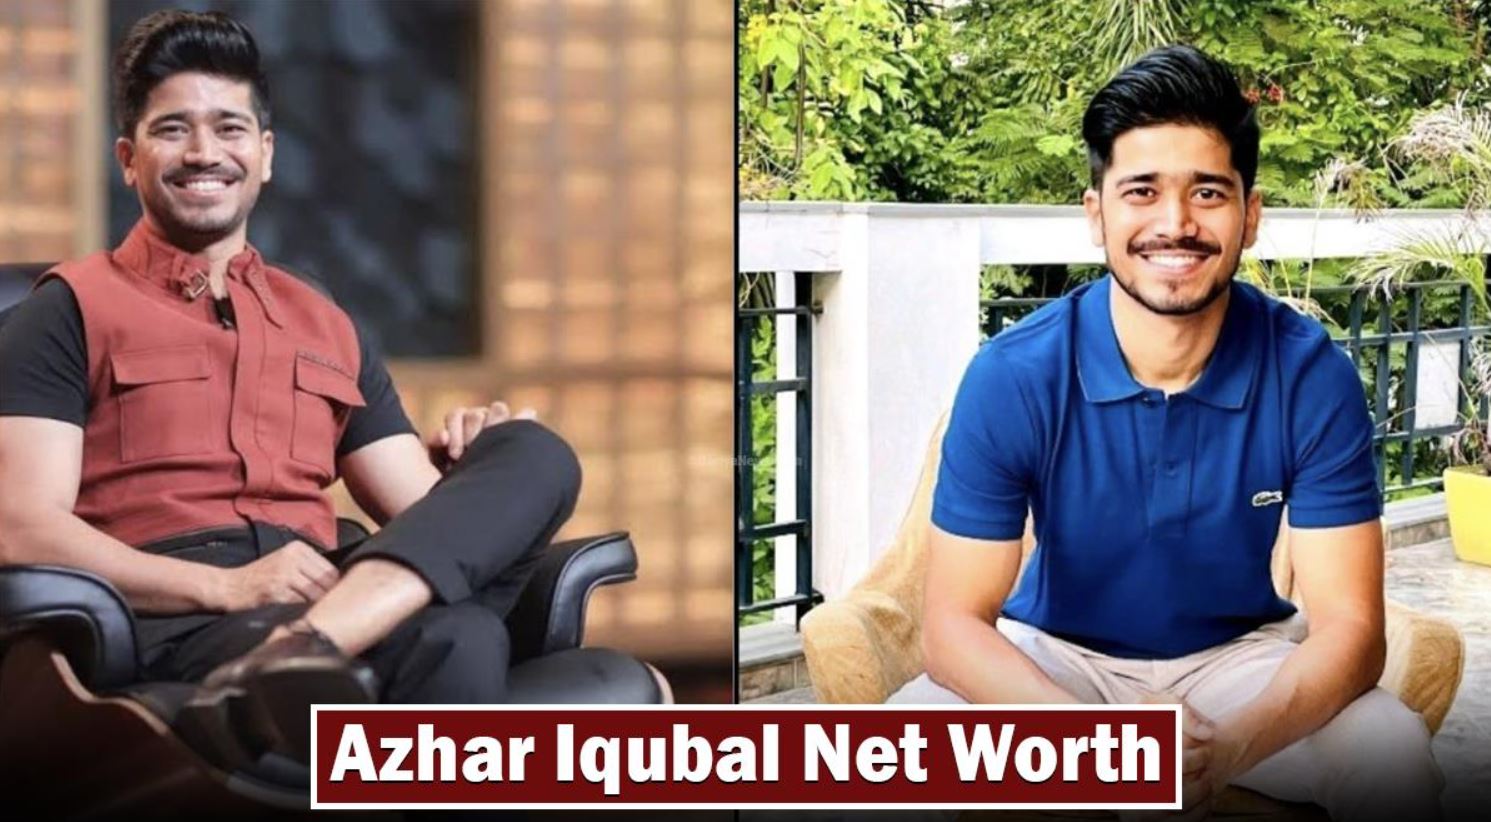 Azhar Iqubal Net Worth